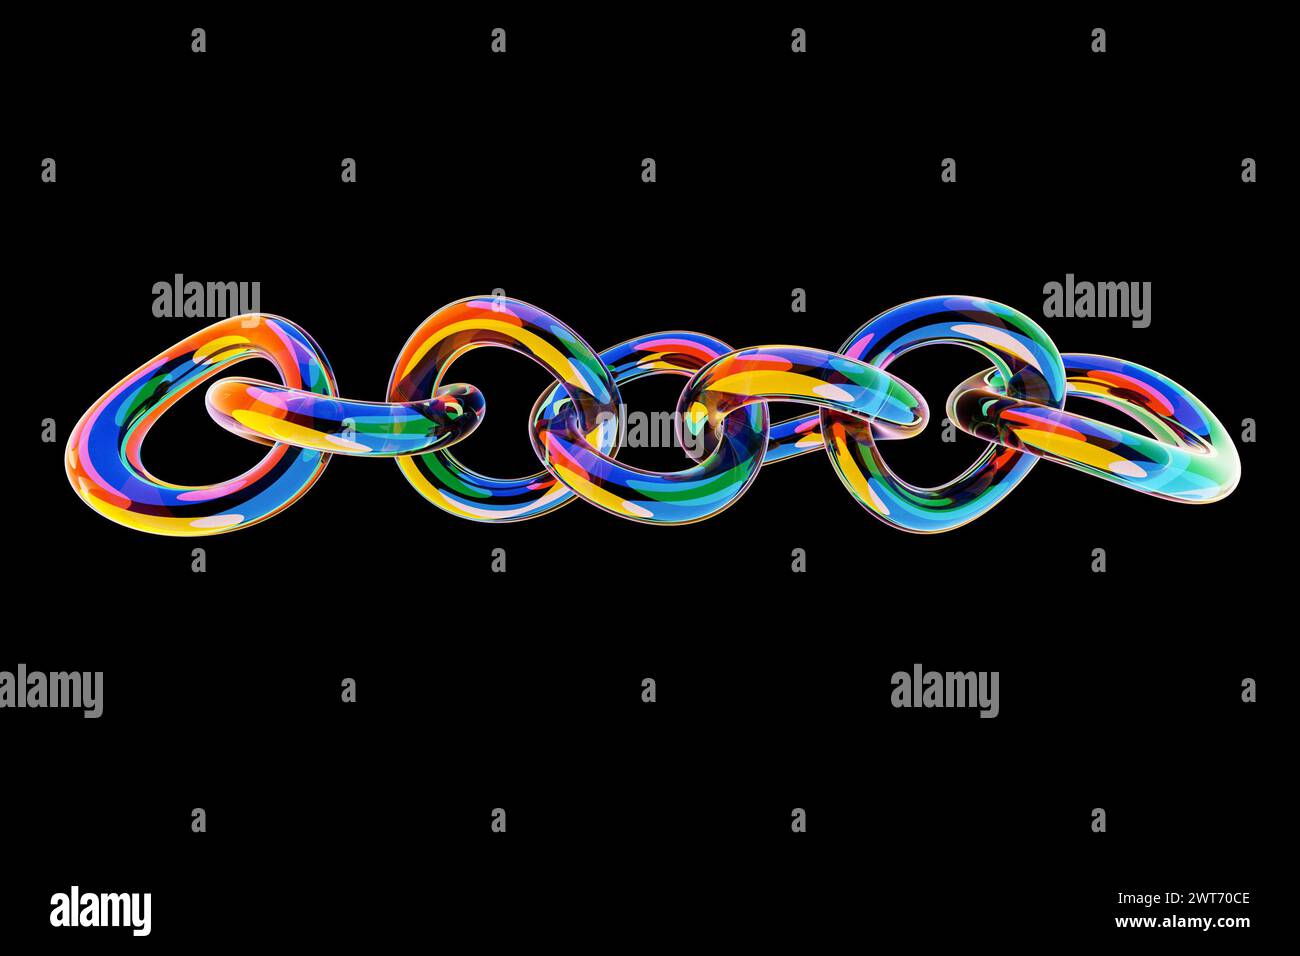 ilustración 3d de cadenas coloridas. Conjunto de cadenas sobre un fondo negro. Patrón geométrico. Tecnología de fondo de geometría Foto de stock